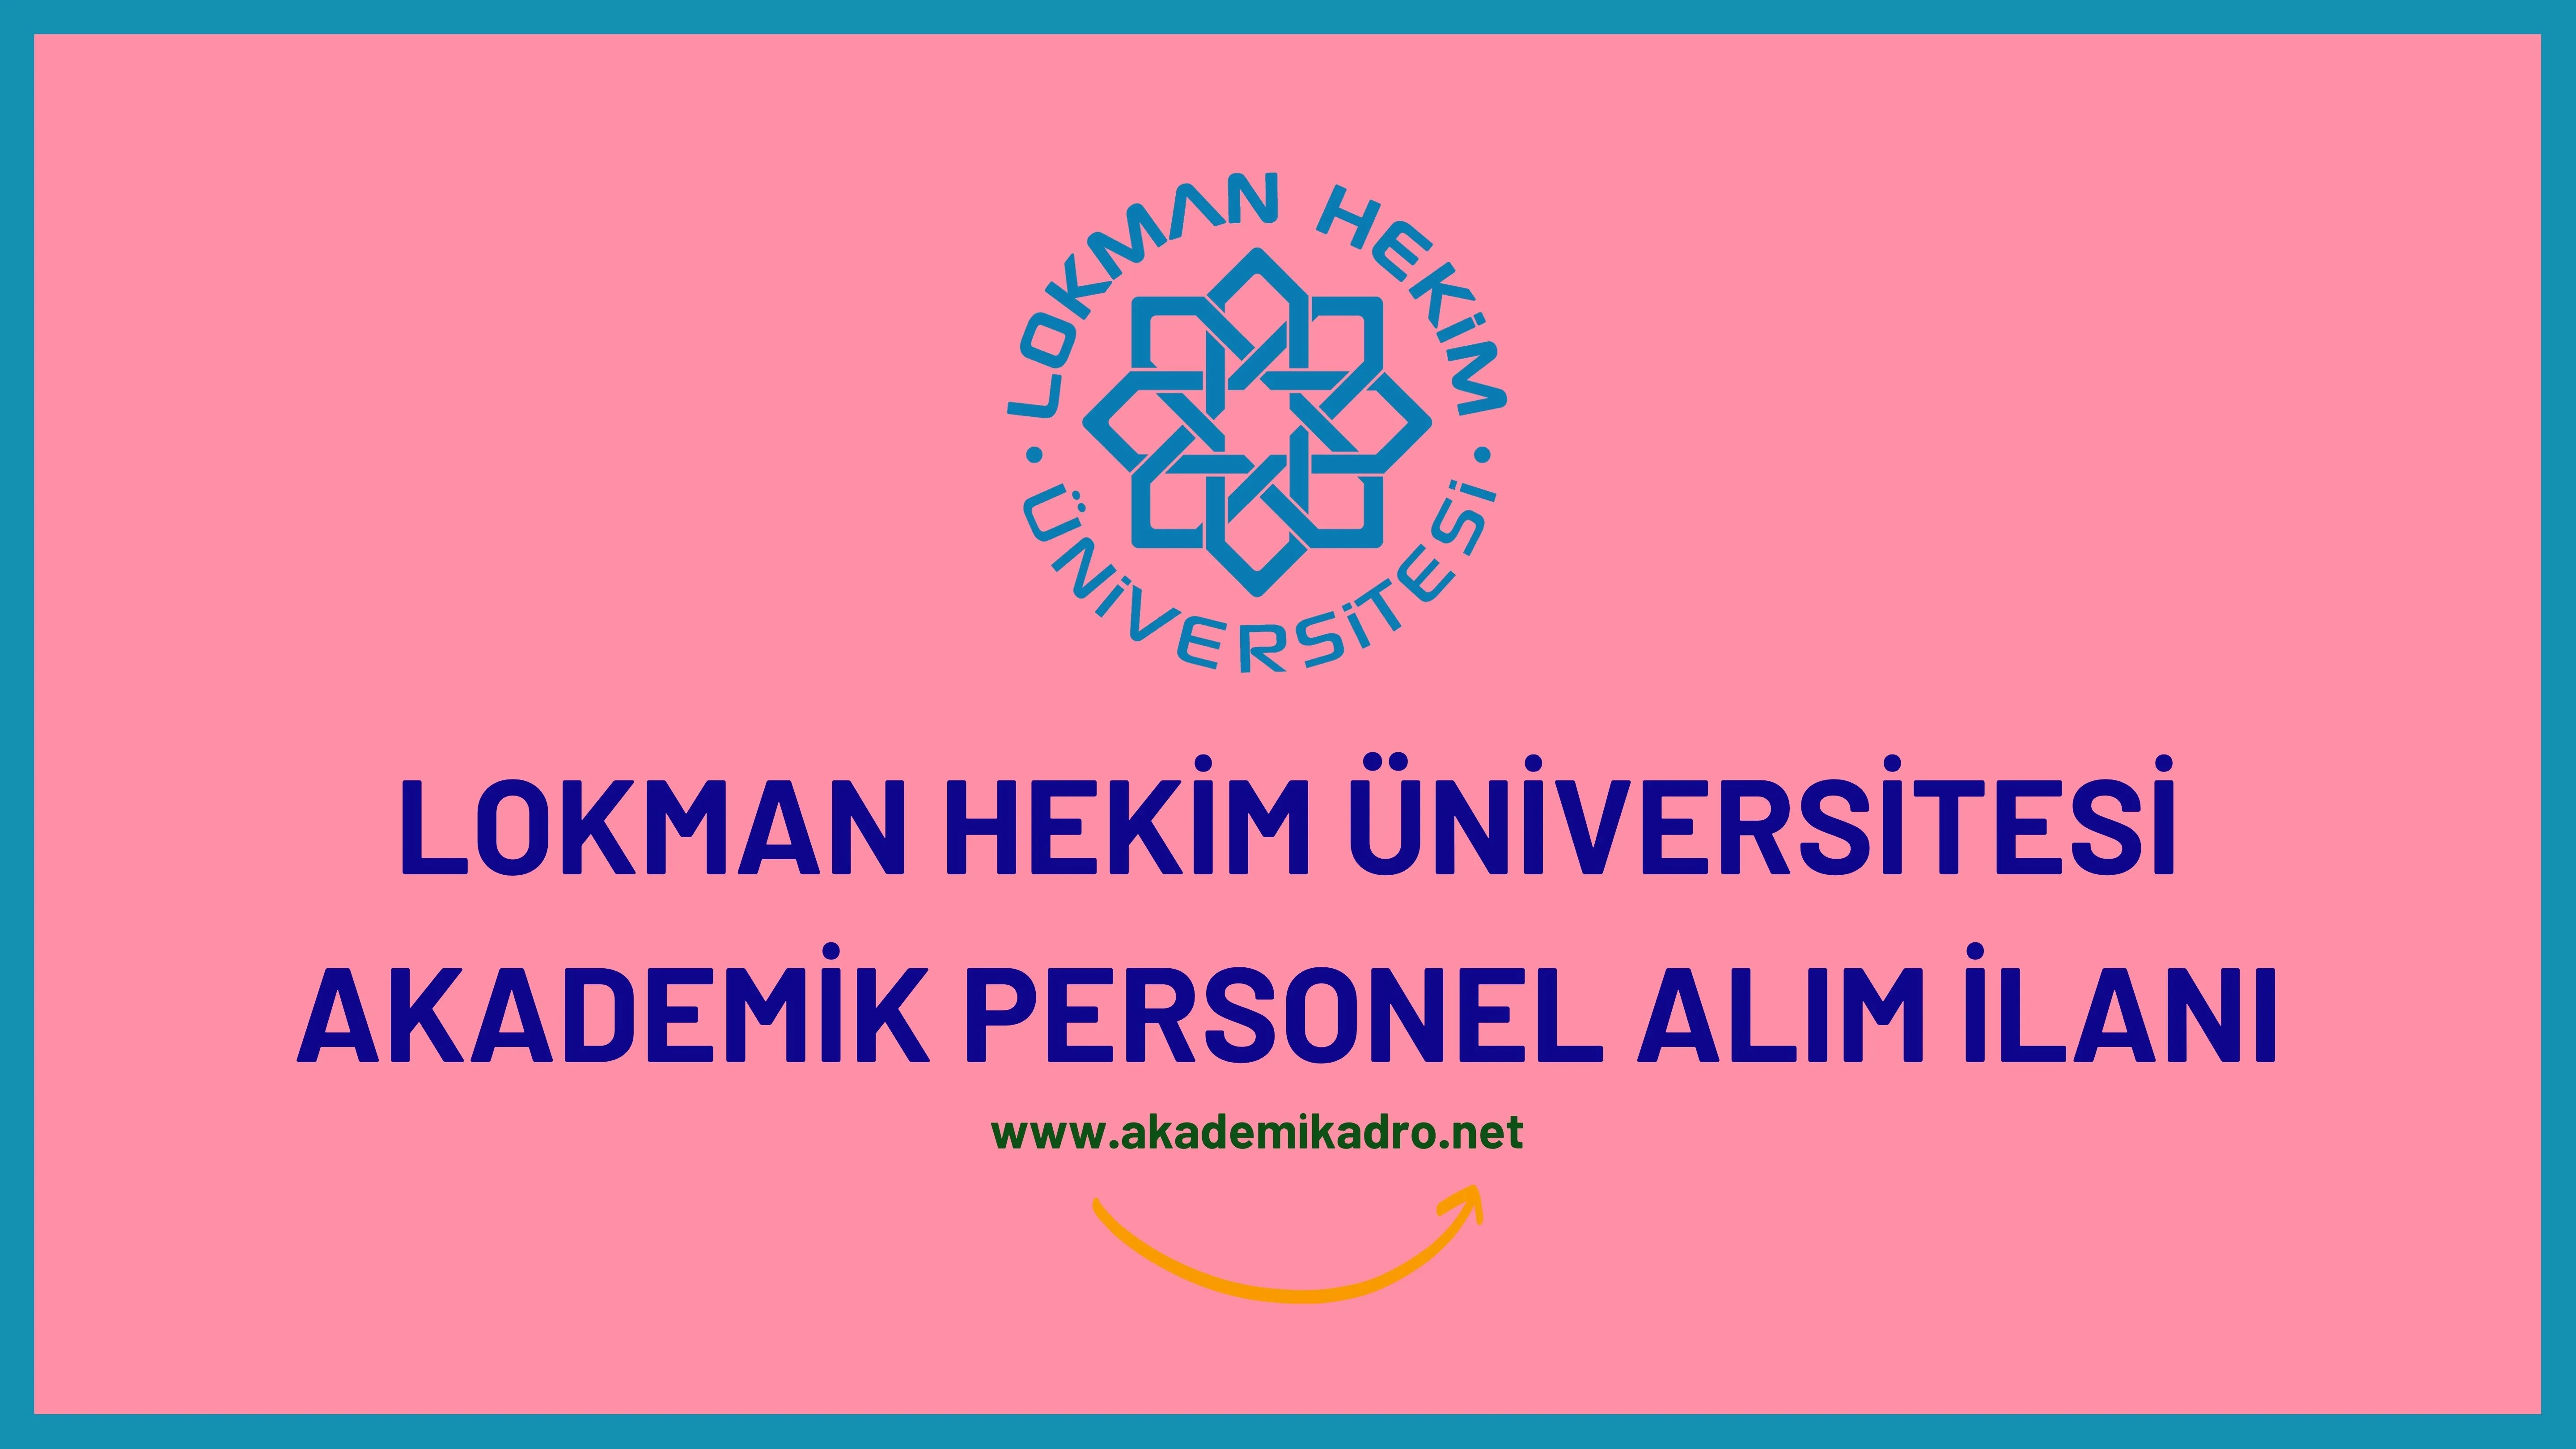 Lokman Hekim Üniversitesi çeşitli branşlarda 12 akademik personel alacak. Son başvuru tarihi 02 Ocak 2023.